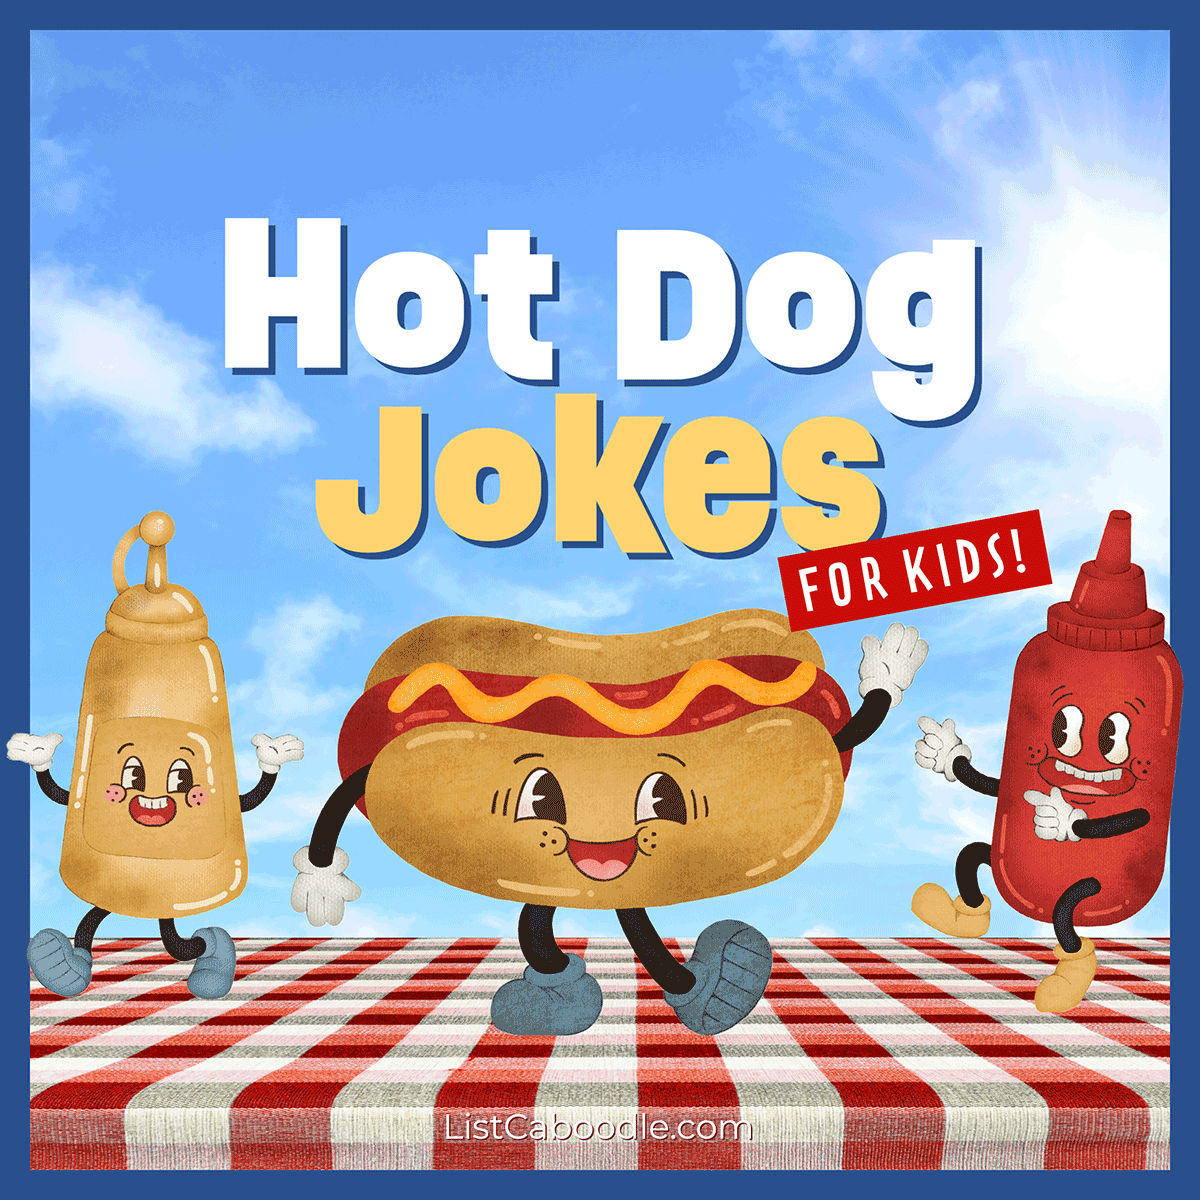 Hot dog jokes for kids